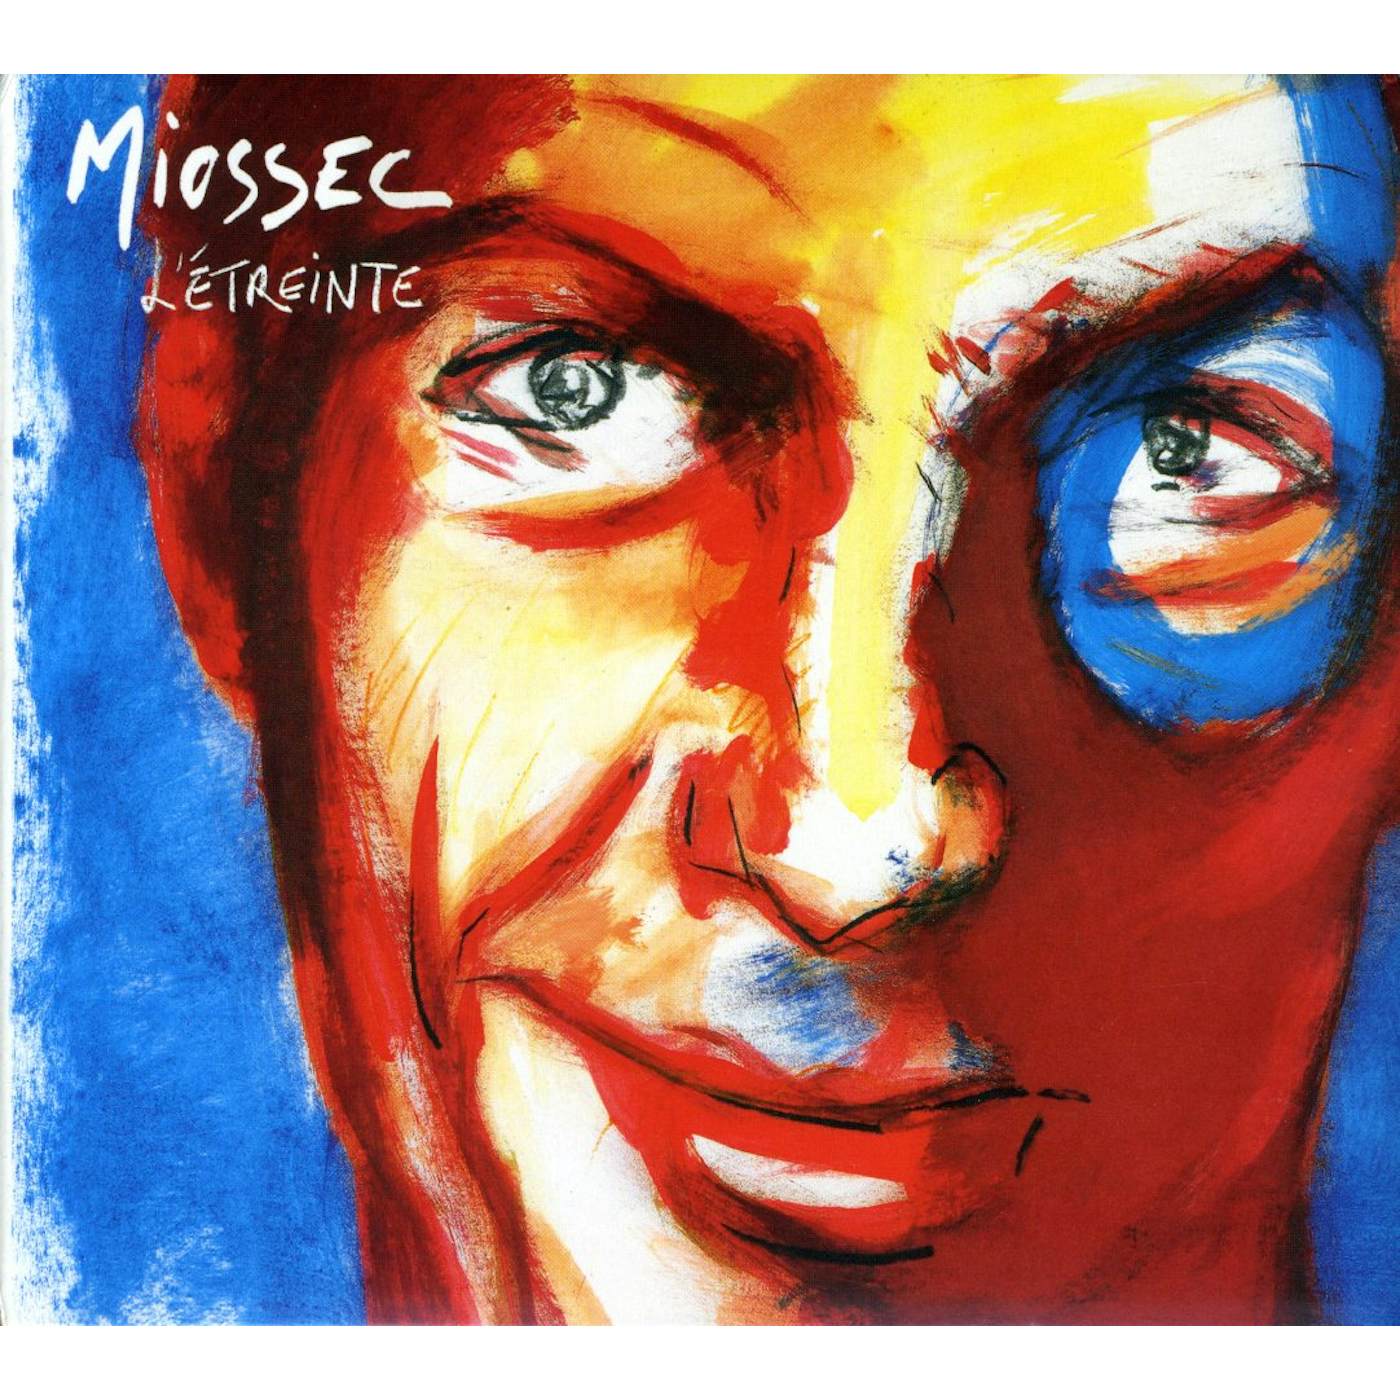 Miossec L'ETREINTE CD